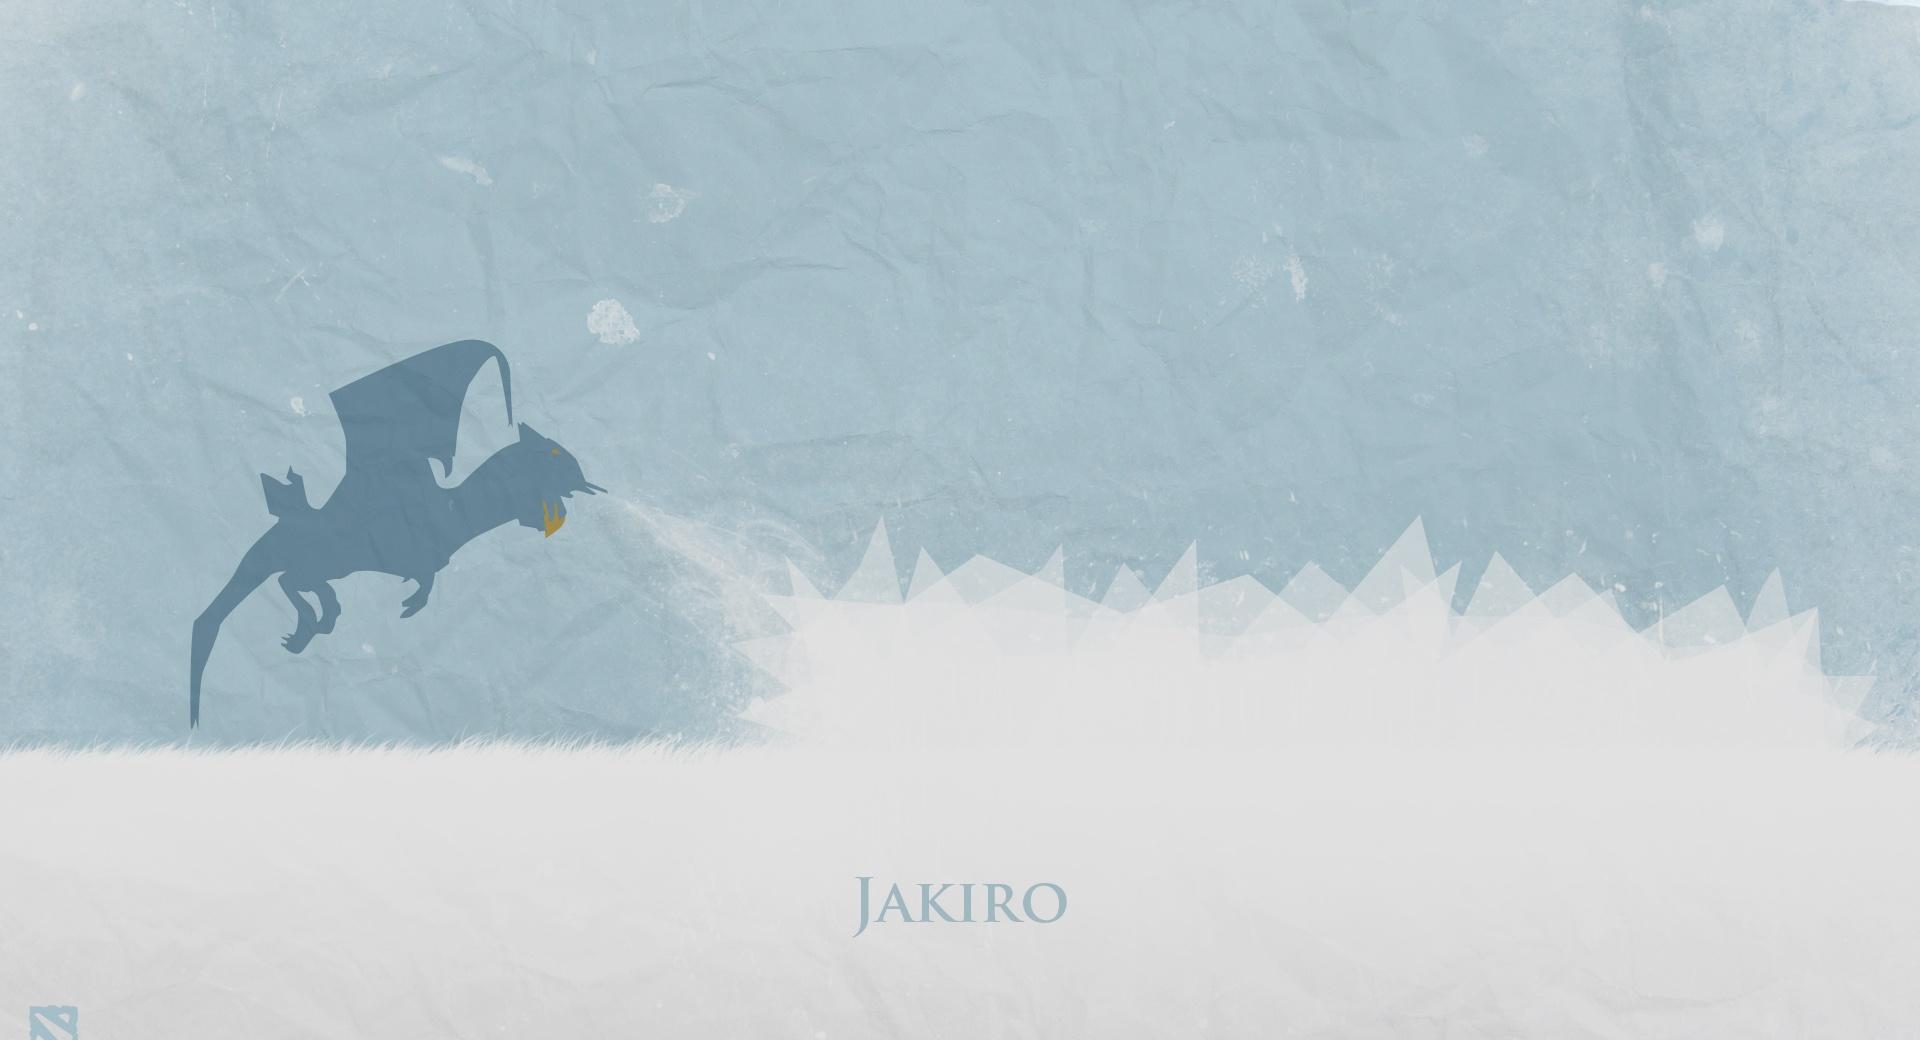 Jakiro - DotA 2 at 1152 x 864 size wallpapers HD quality